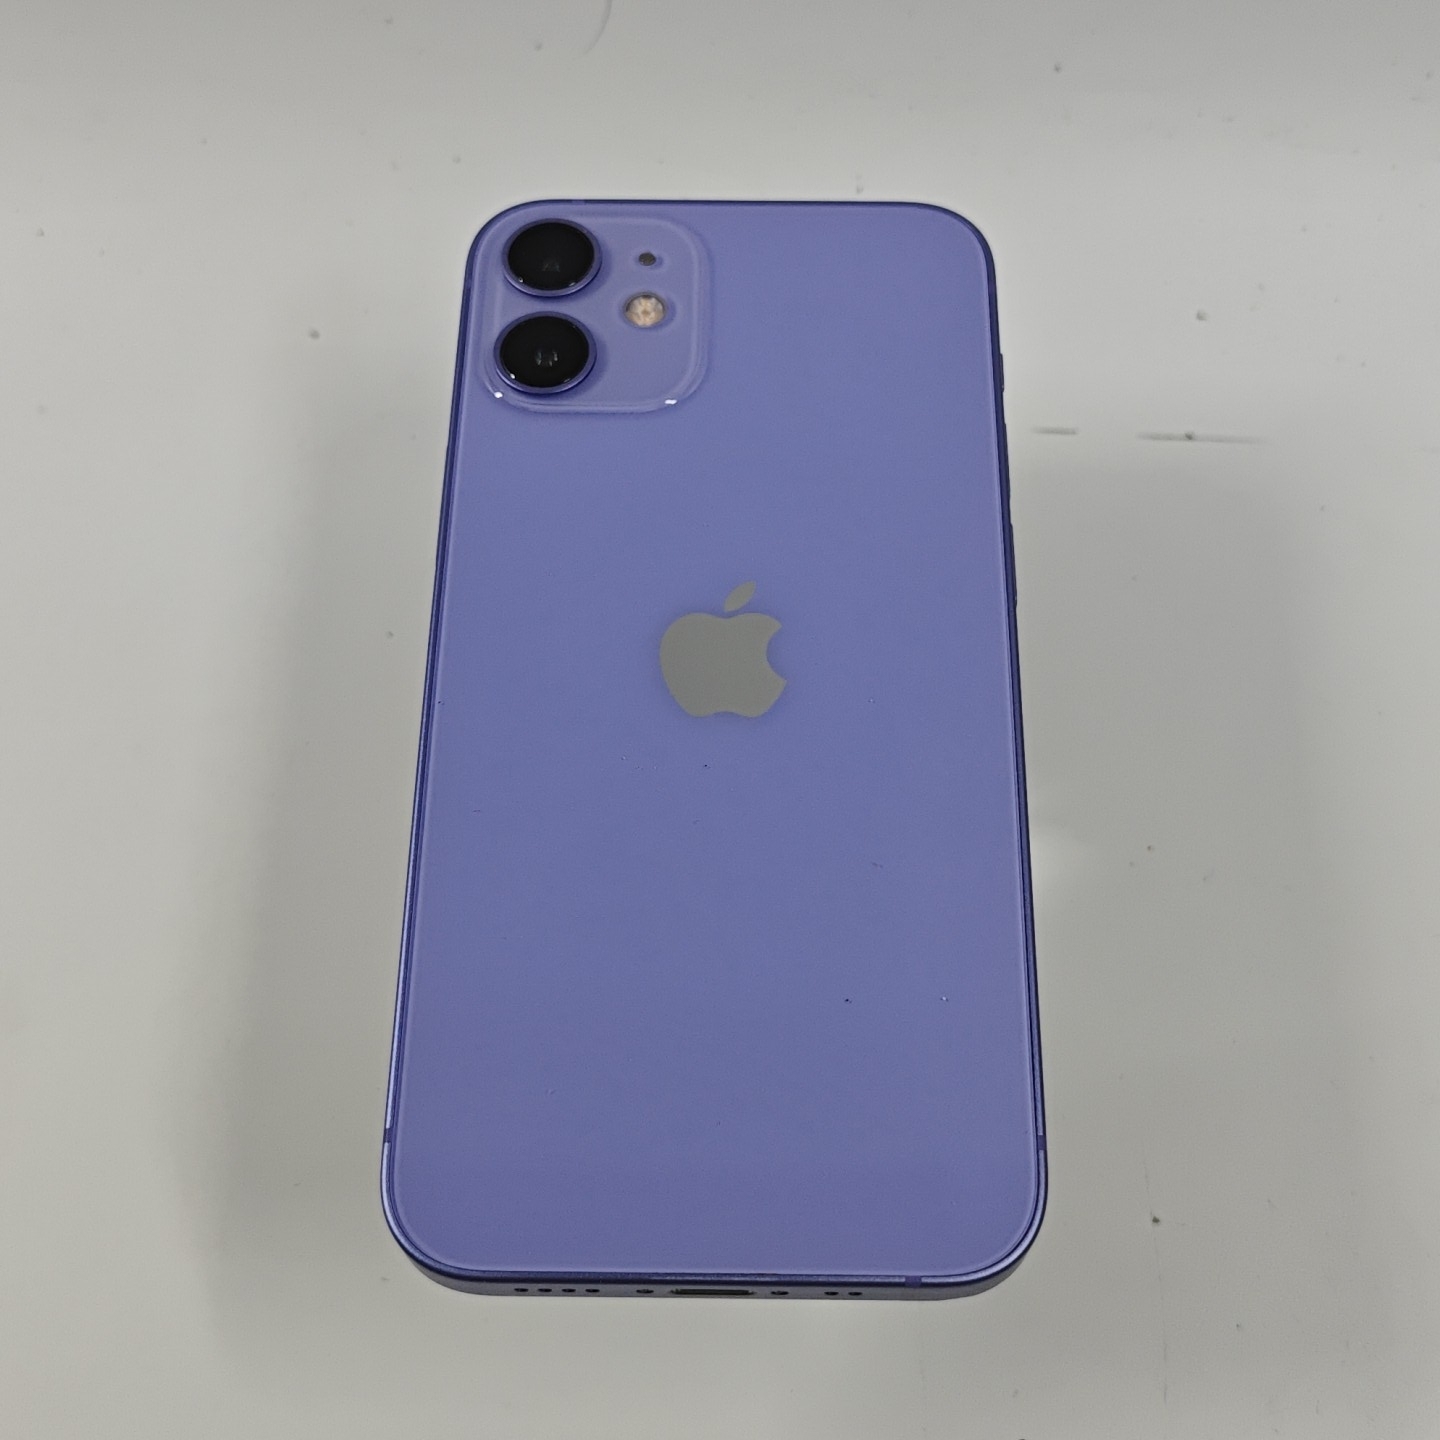 苹果【iPhone 12 mini】5G全网通 紫色 64G 国行 9成新 